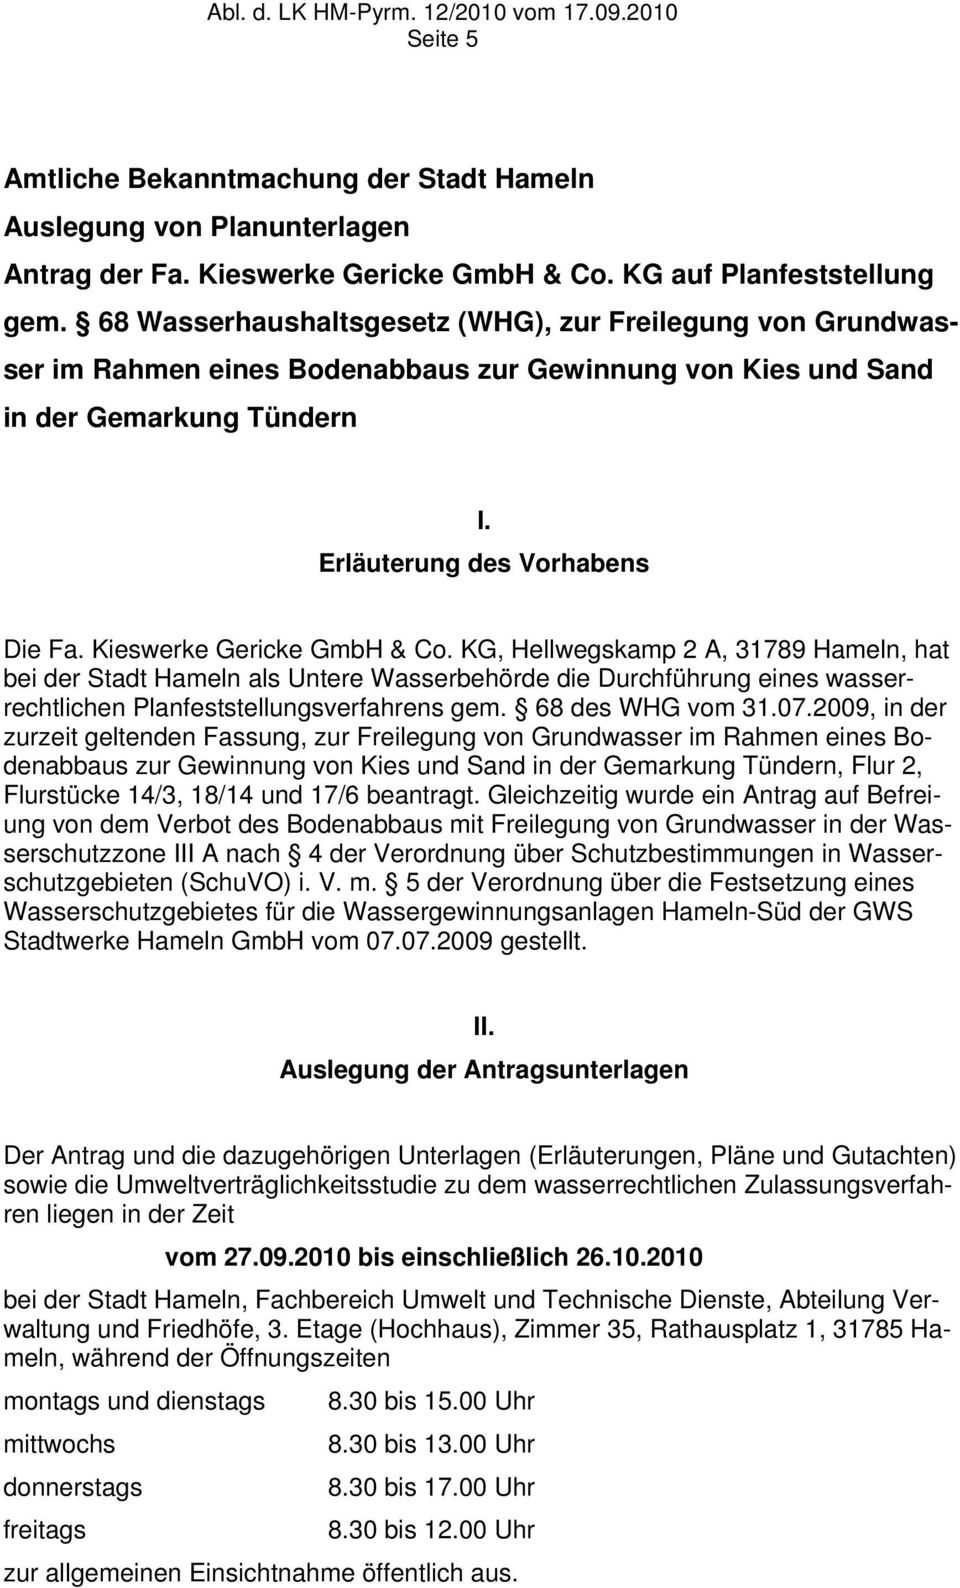 Kieswerke Gericke GmbH & Co. KG, Hellwegskamp 2 A, 31789 Hameln, hat bei der Stadt Hameln als Untere Wasserbehörde die Durchführung eines wasserrechtlichen Planfeststellungsverfahrens gem.